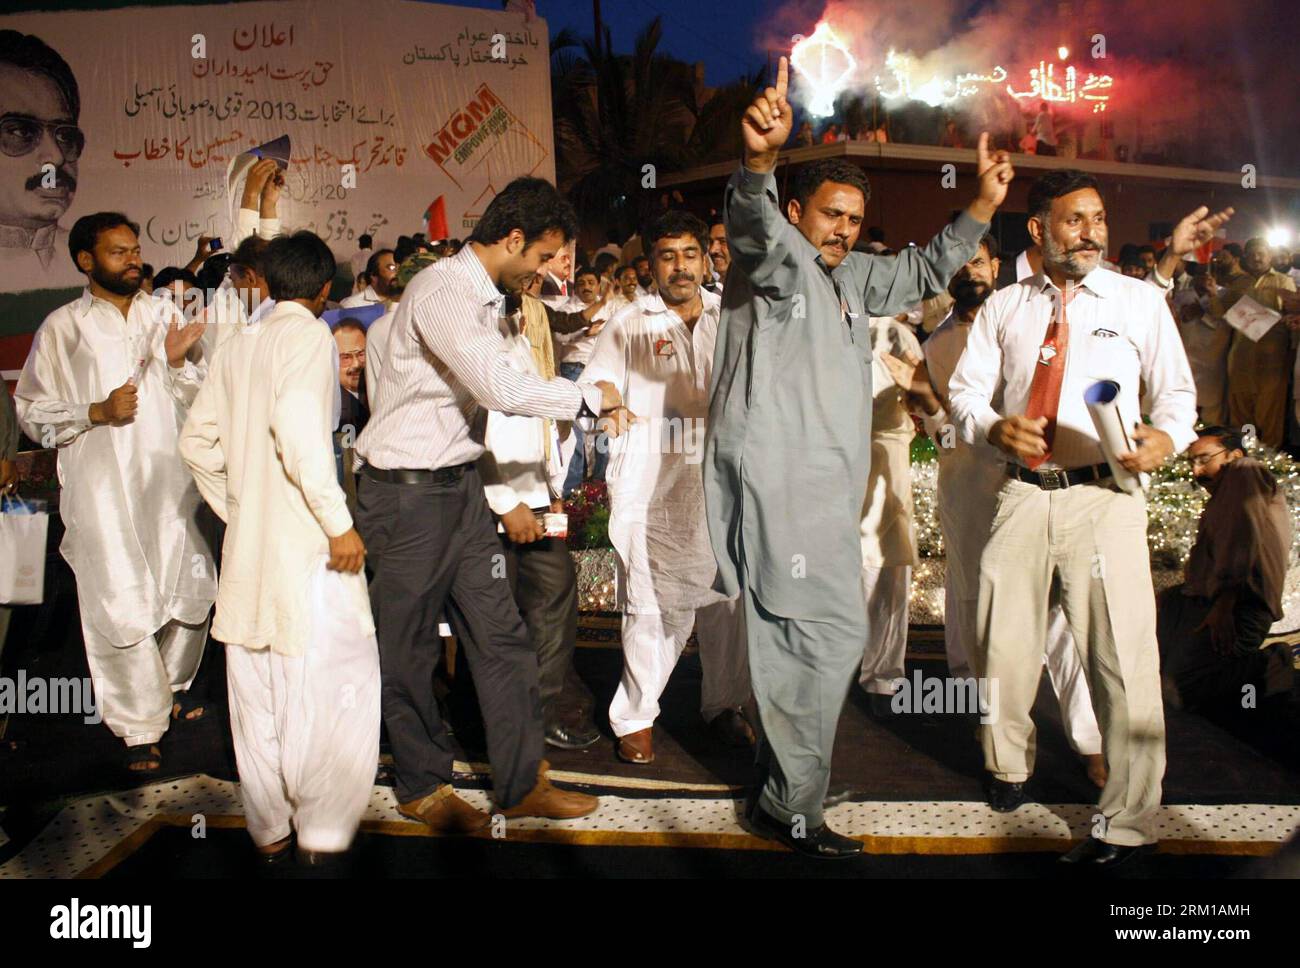 Bildnummer: 59545967 Datum: 20.04.2013 Copyright: imago/Xinhua KARACHI, 20 aprile 2013 - sostenitori della danza del partito del movimento Mutahida Qaumi durante una manifestazione elettorale nella città portuale del Pakistan meridionale di Karachi, 20 aprile 2013. Le campagne per le elezioni del mese prossimo in Pakistan hanno avuto luogo in quanto tutti i principali partiti hanno finalizzato i loro candidati e l'organo elettorale ha anche iniziato a stampare le schede elettorali, come riportato dai media locali sabato. (Xinhua/Masroor) (lyx) PAKISTAN-KARACHI-ELEZIONI-CAMPAGNA PUBLICATIONxNOTxINxCHN Pakistan Wahlkampf Politik xsp x0x 2013 quer 59545967 Data 20 04 2013 C. Foto Stock